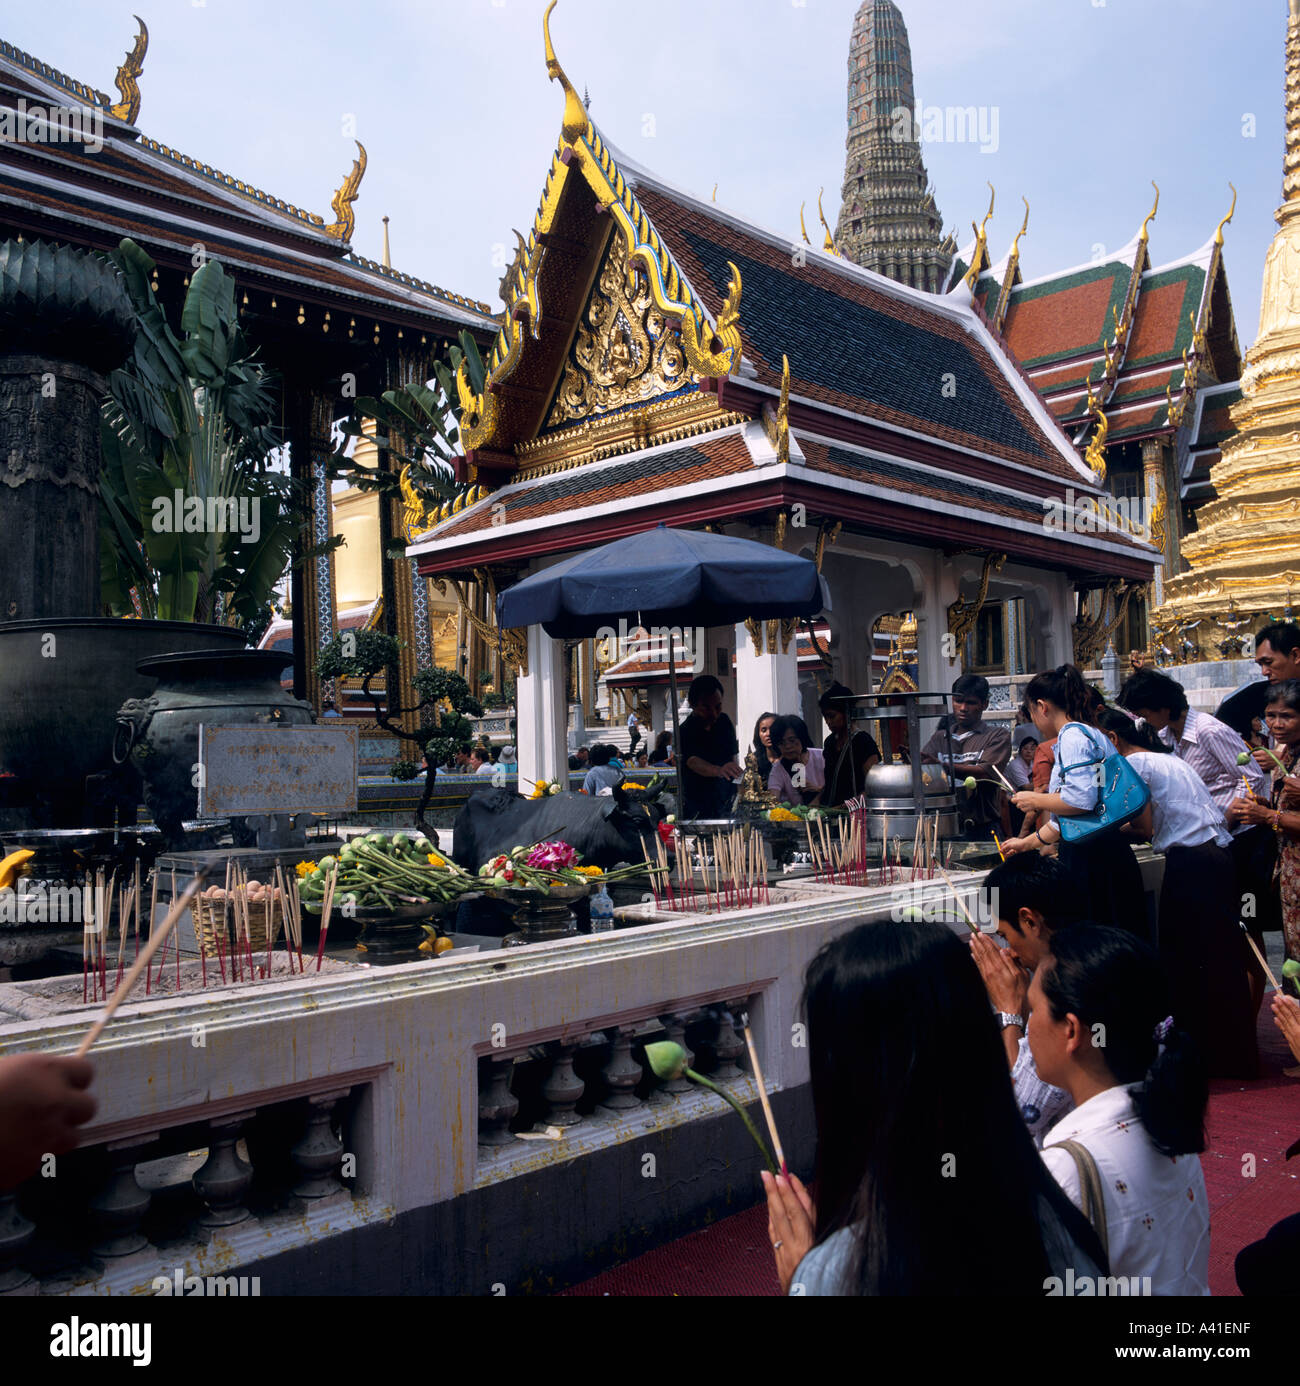 Les thaïs priant au culte en face du Bouddha Émeraude Grand Palace Bangkok Thailande Asie du sud-est Banque D'Images